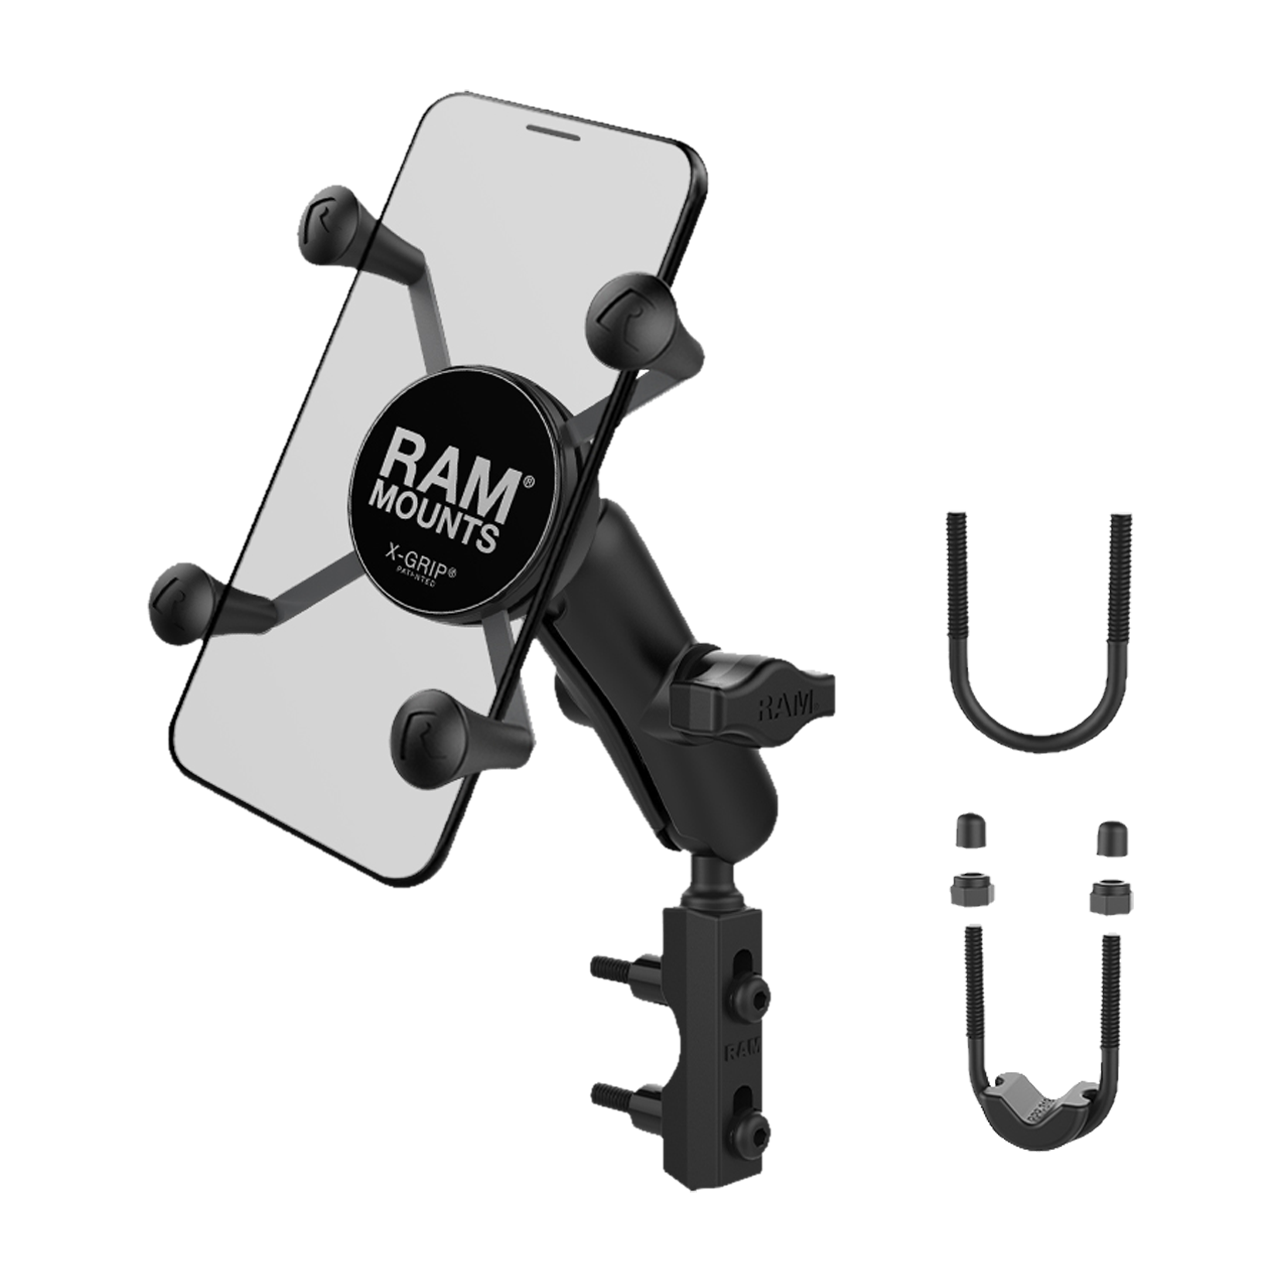 RAM X-Grip Soporte universal para teléfono con bola - Interiores